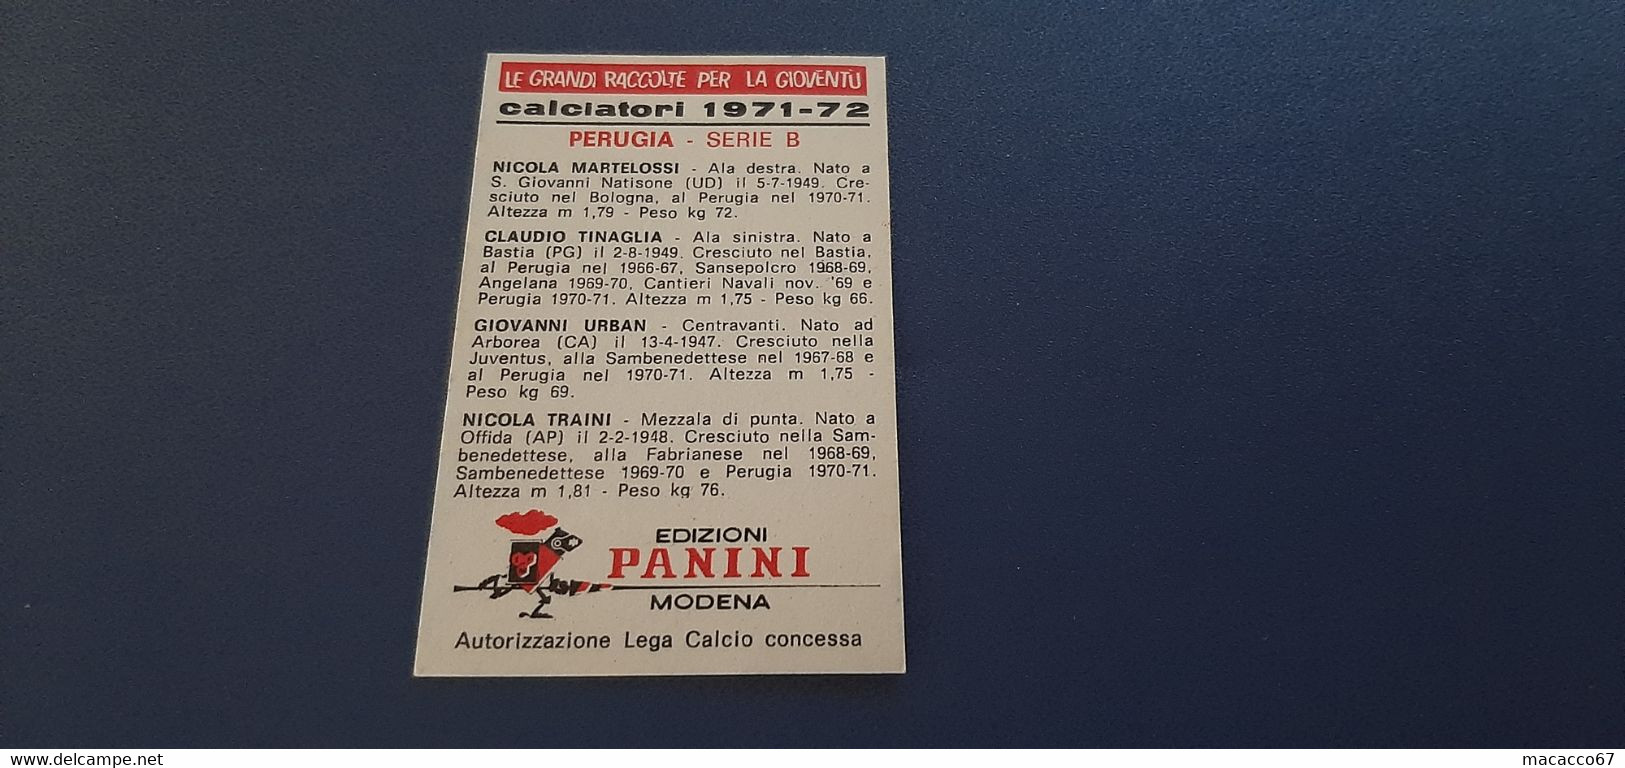 Figurina Calciatori Panini 1971/72 - Martelossi Perugia - Edizione Italiana